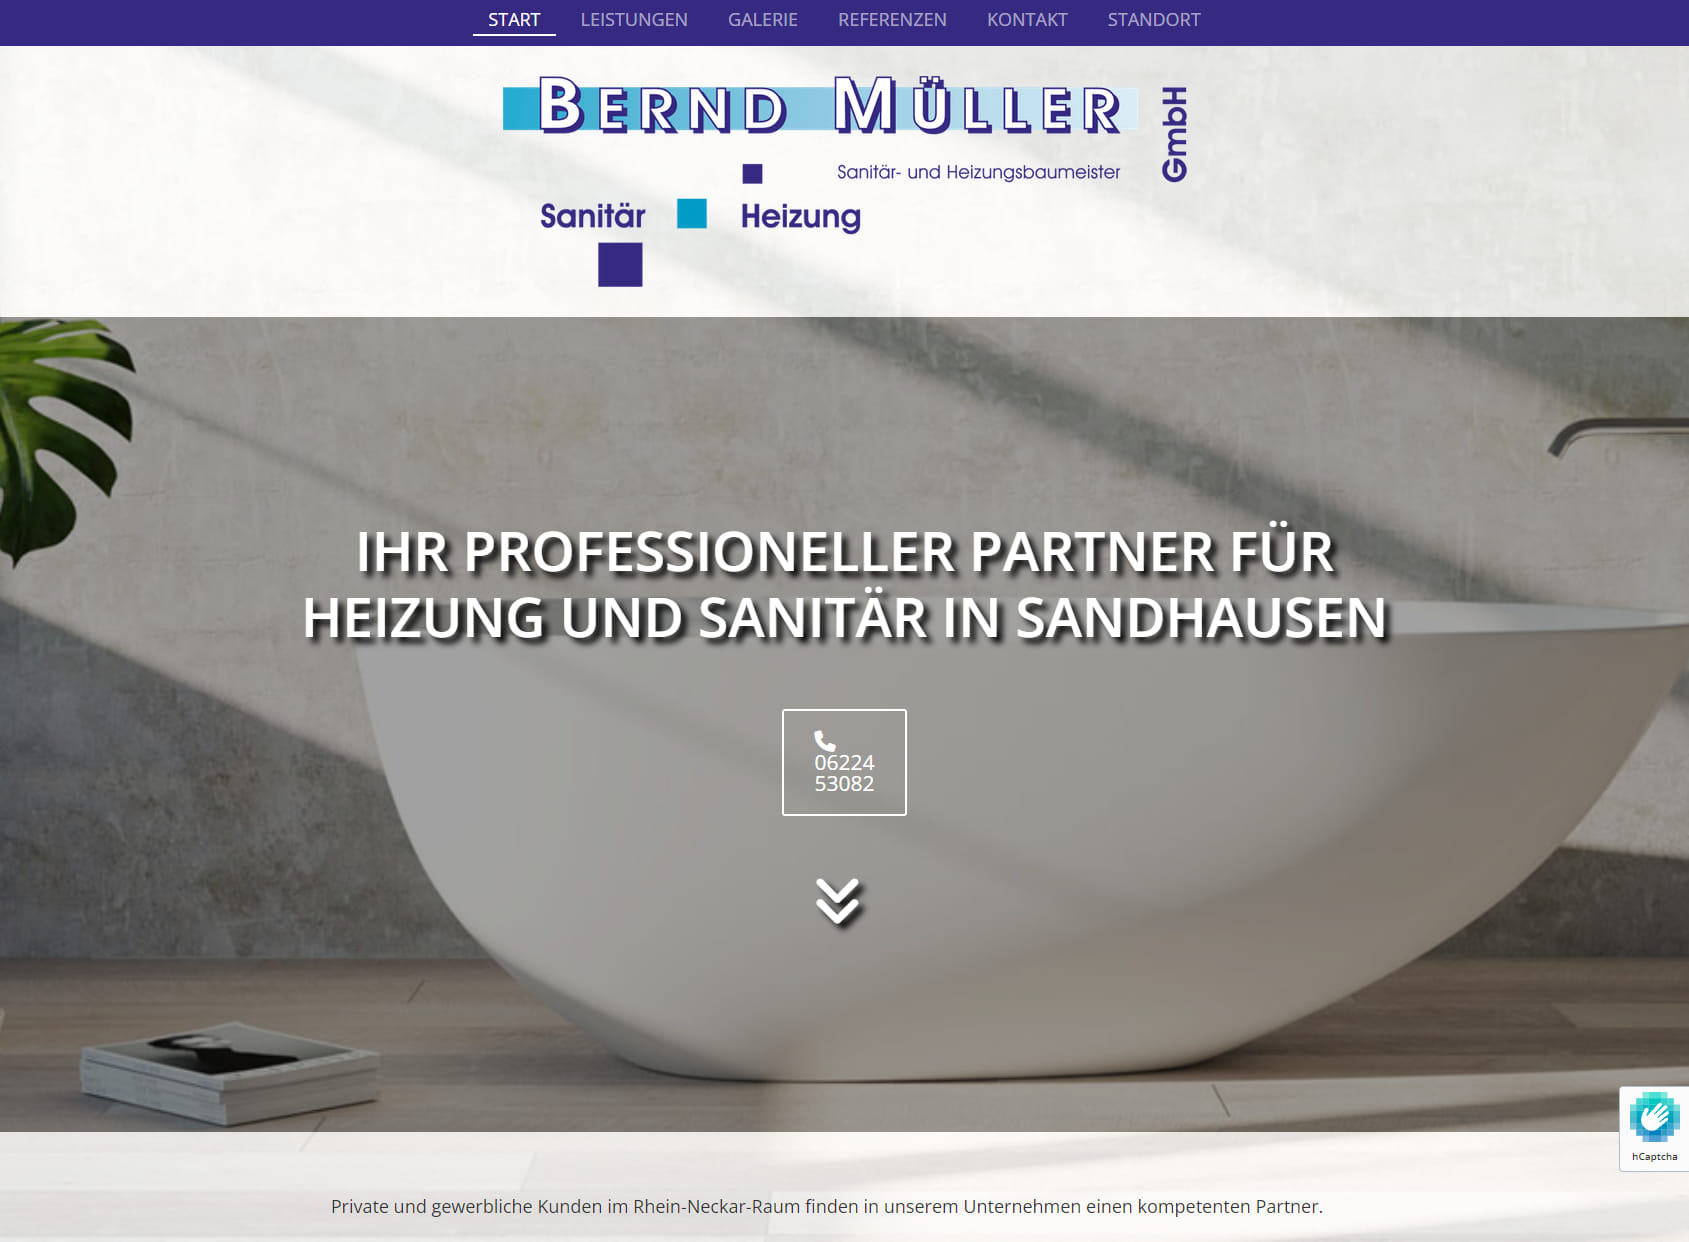 Bernd Müller Sanitär & Heizungs GmbH